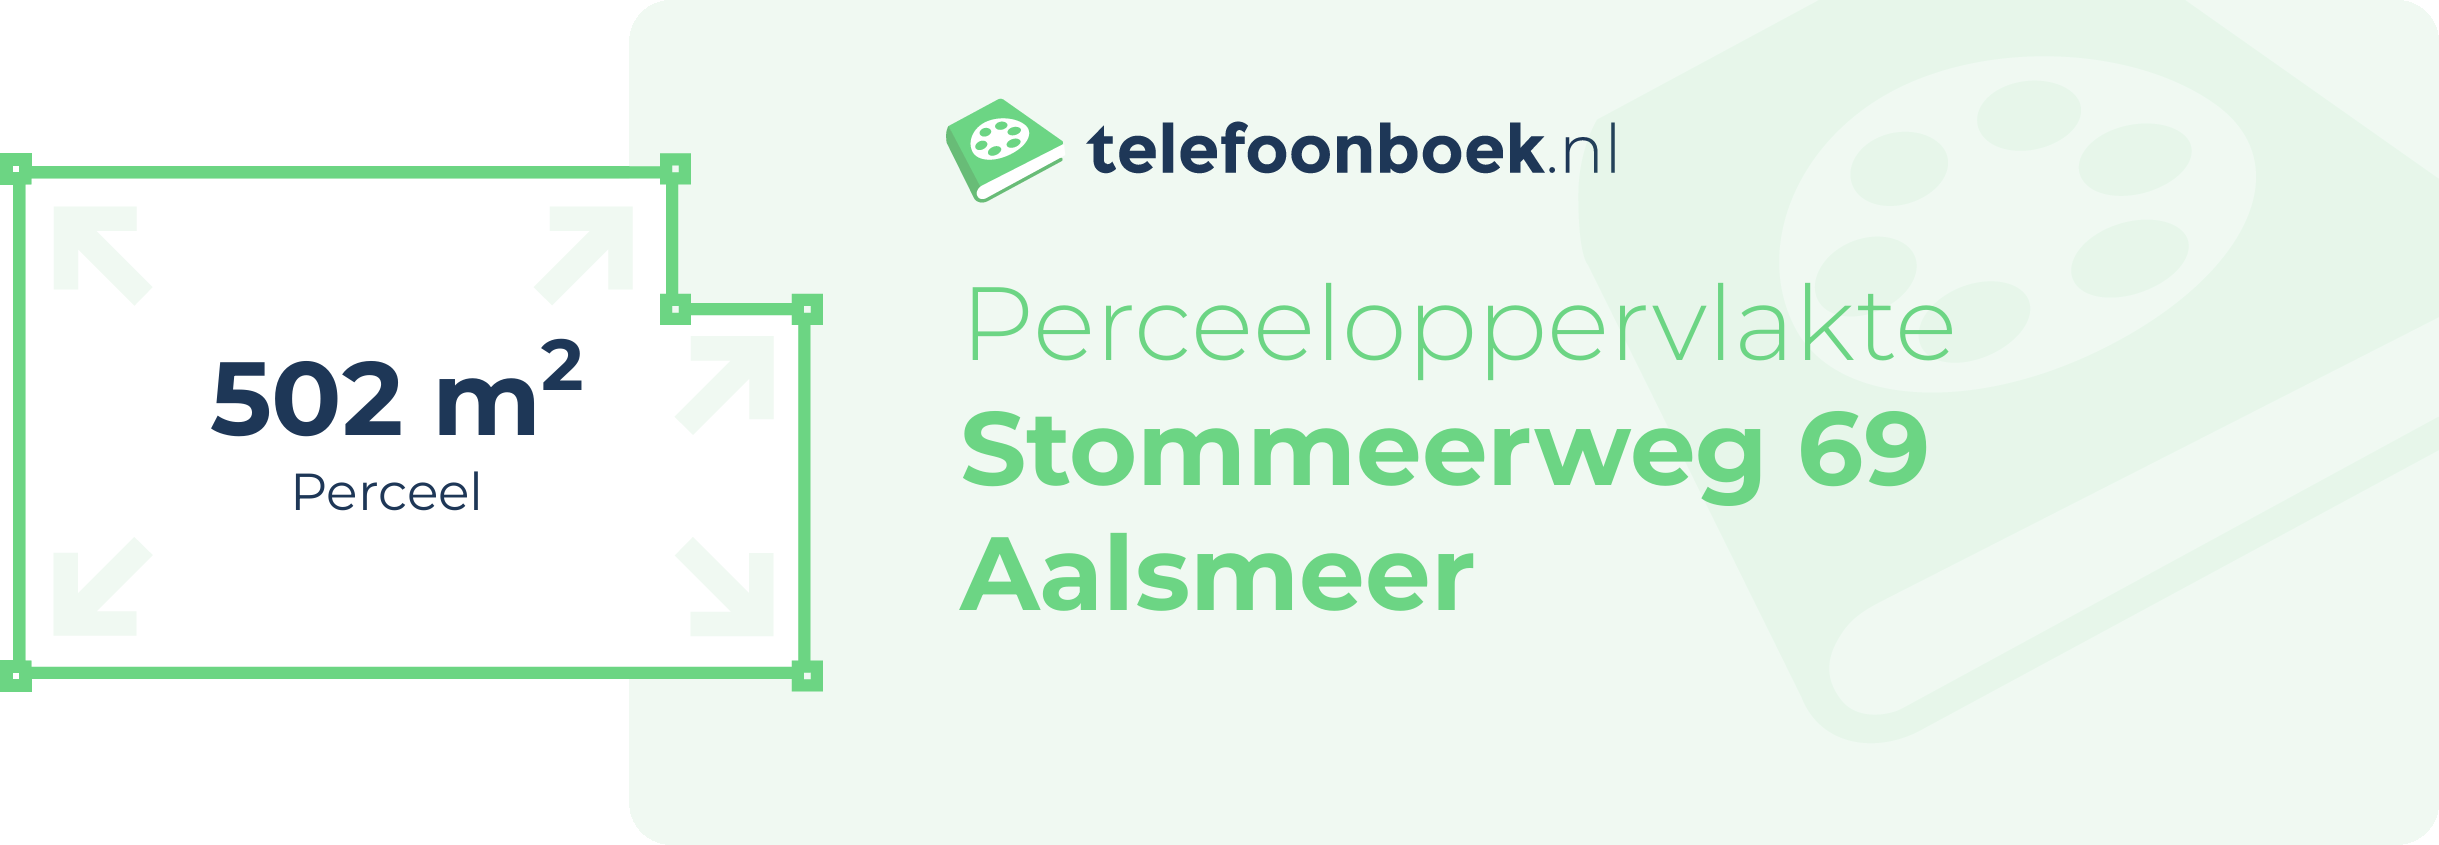 Perceeloppervlakte Stommeerweg 69 Aalsmeer